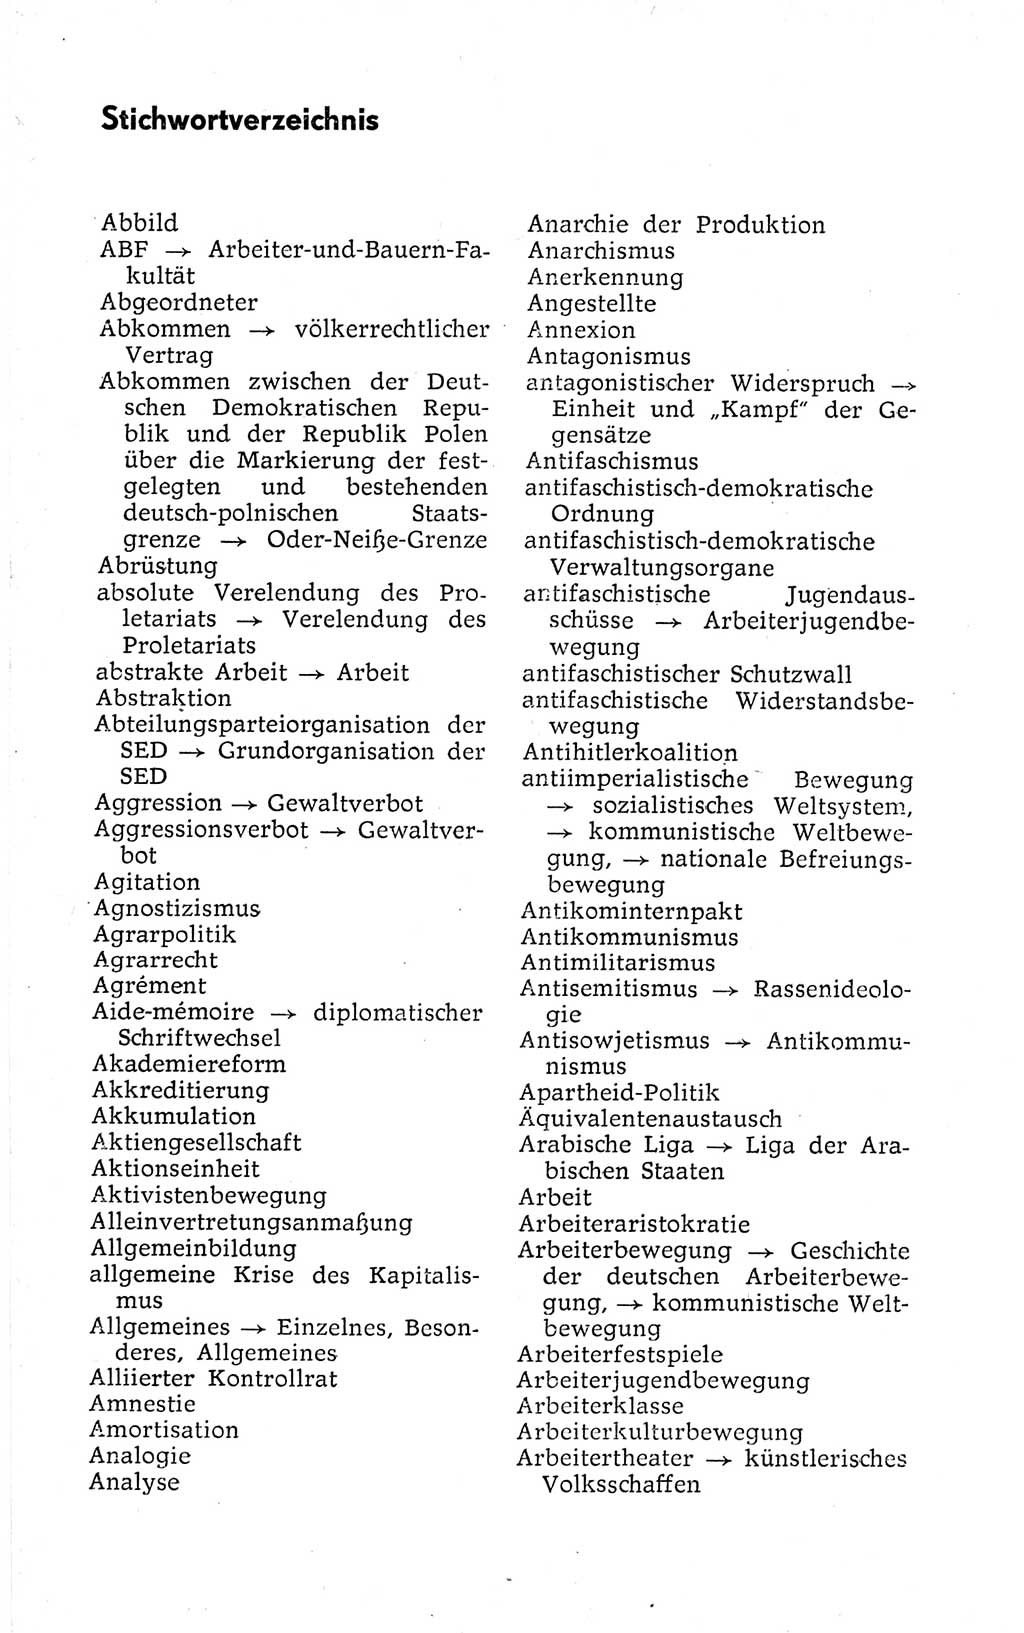 Kleines politisches Wörterbuch [Deutsche Demokratische Republik (DDR)] 1973, Seite 996 (Kl. pol. Wb. DDR 1973, S. 996)